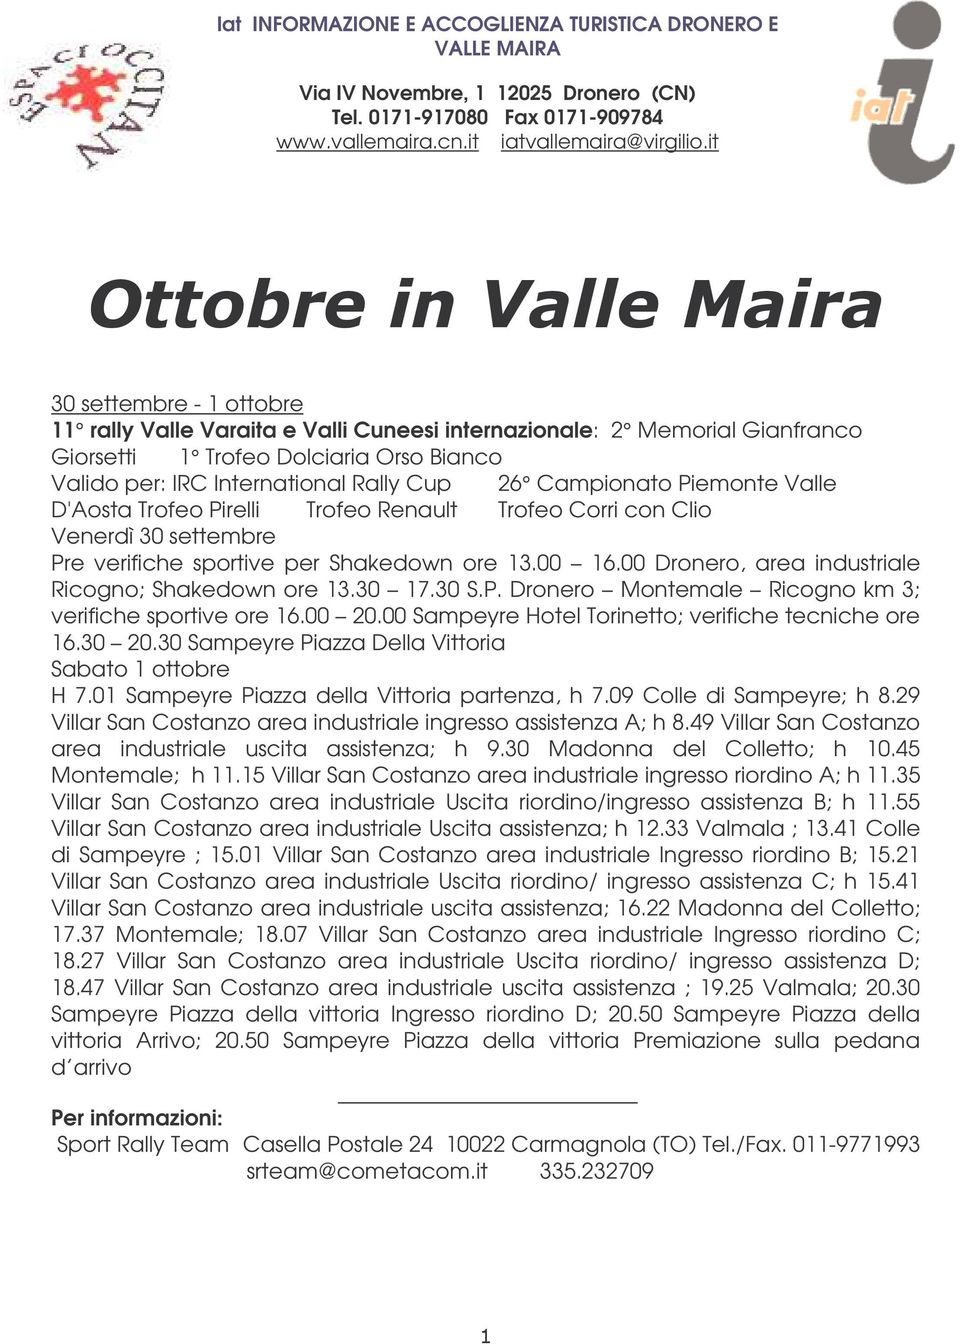 Piemonte Valle D'Aosta Trofeo Pirelli Trofeo Renault Trofeo Corri con Clio Venerdì 30 settembre Pre verifiche sportive per Shakedown ore 13.00 16.